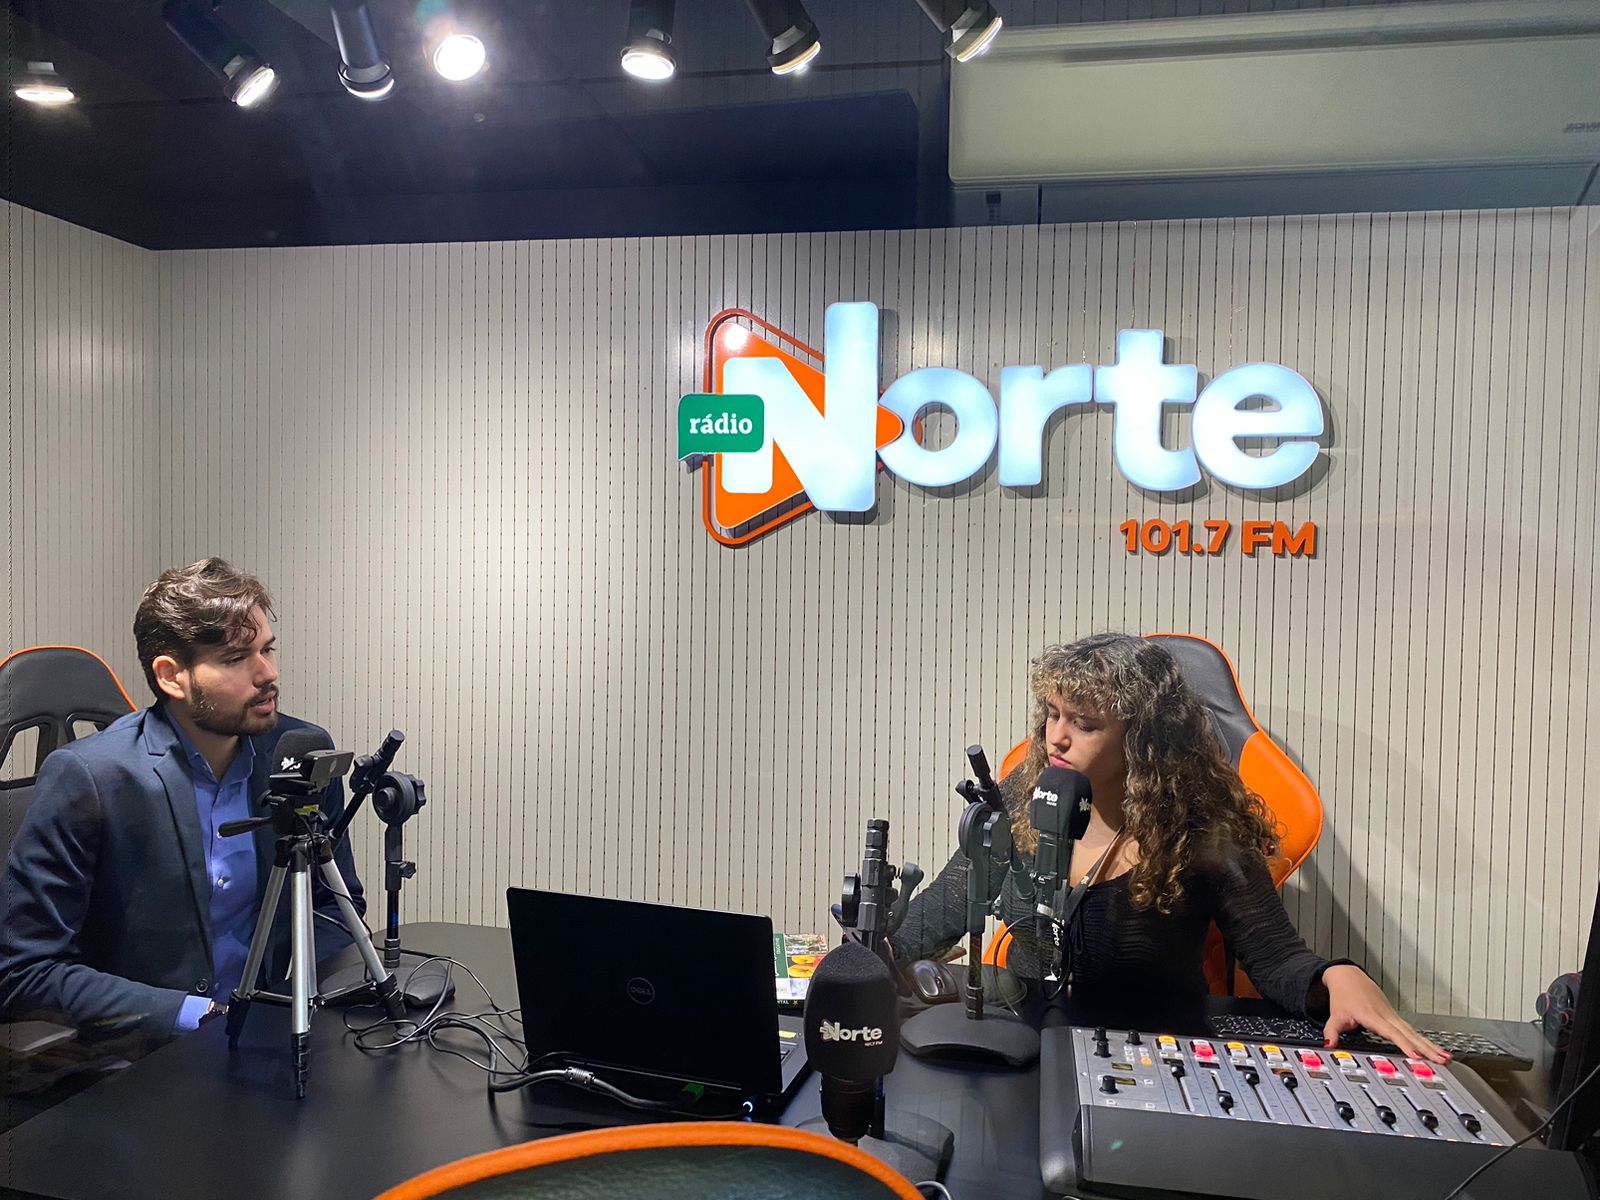 Entrevista com secretário de turismo da Cidade Ocidental ocorreu nesta terça (11) - Foto: Divulgação/Rádio Norte FM